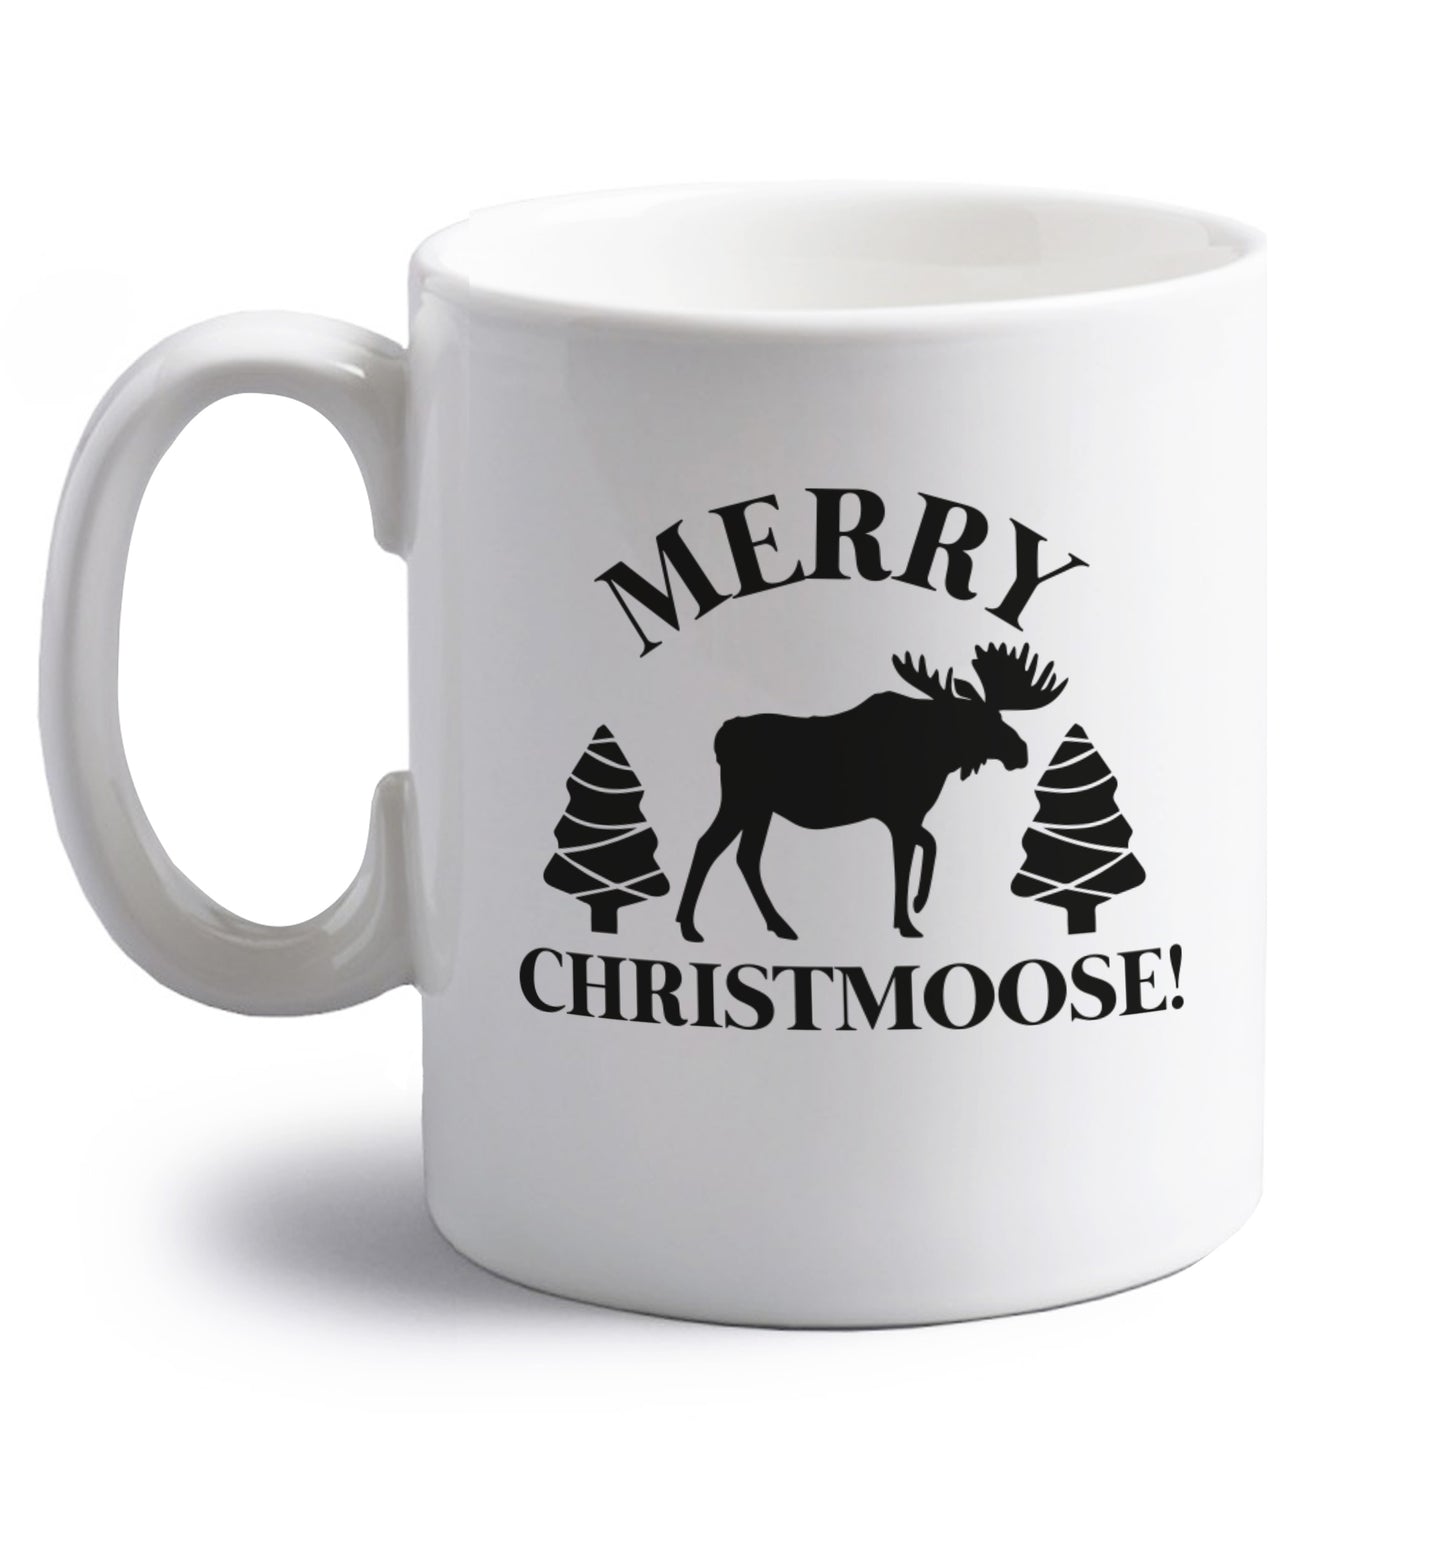 Merry Christmoose right handed white ceramic mug 